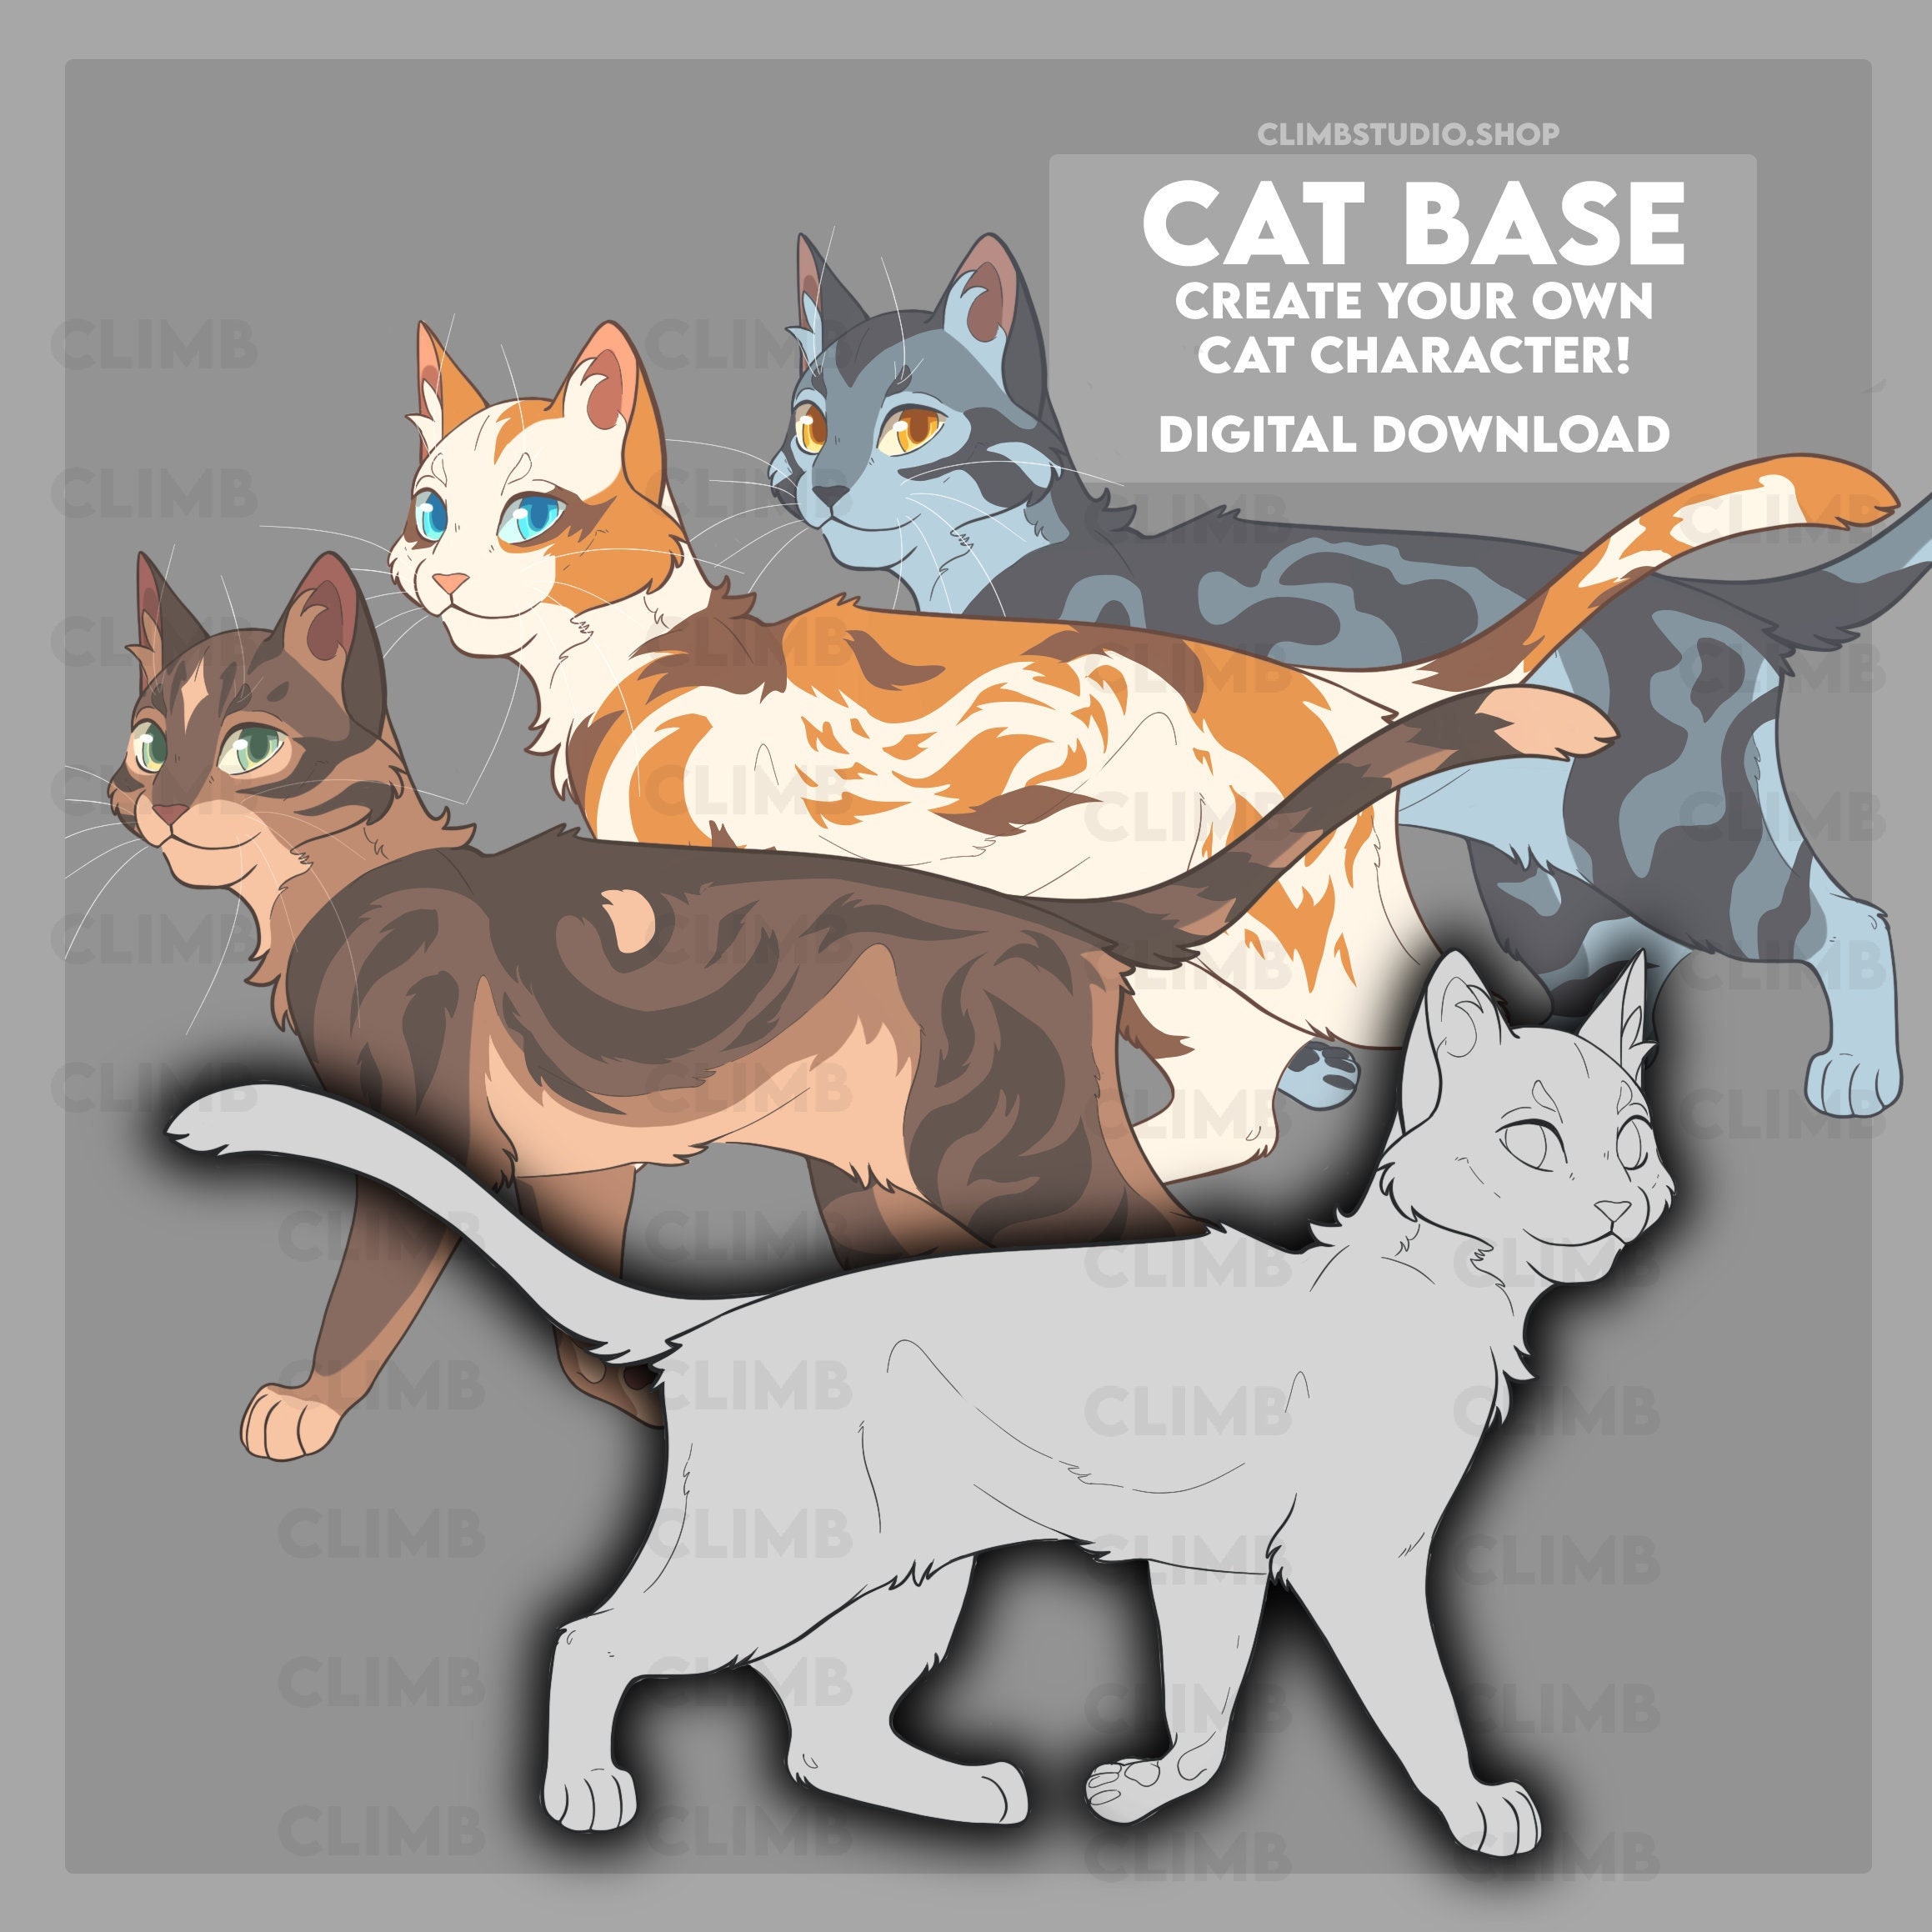 Warrior Cats Sticker Sheet - Villain cats